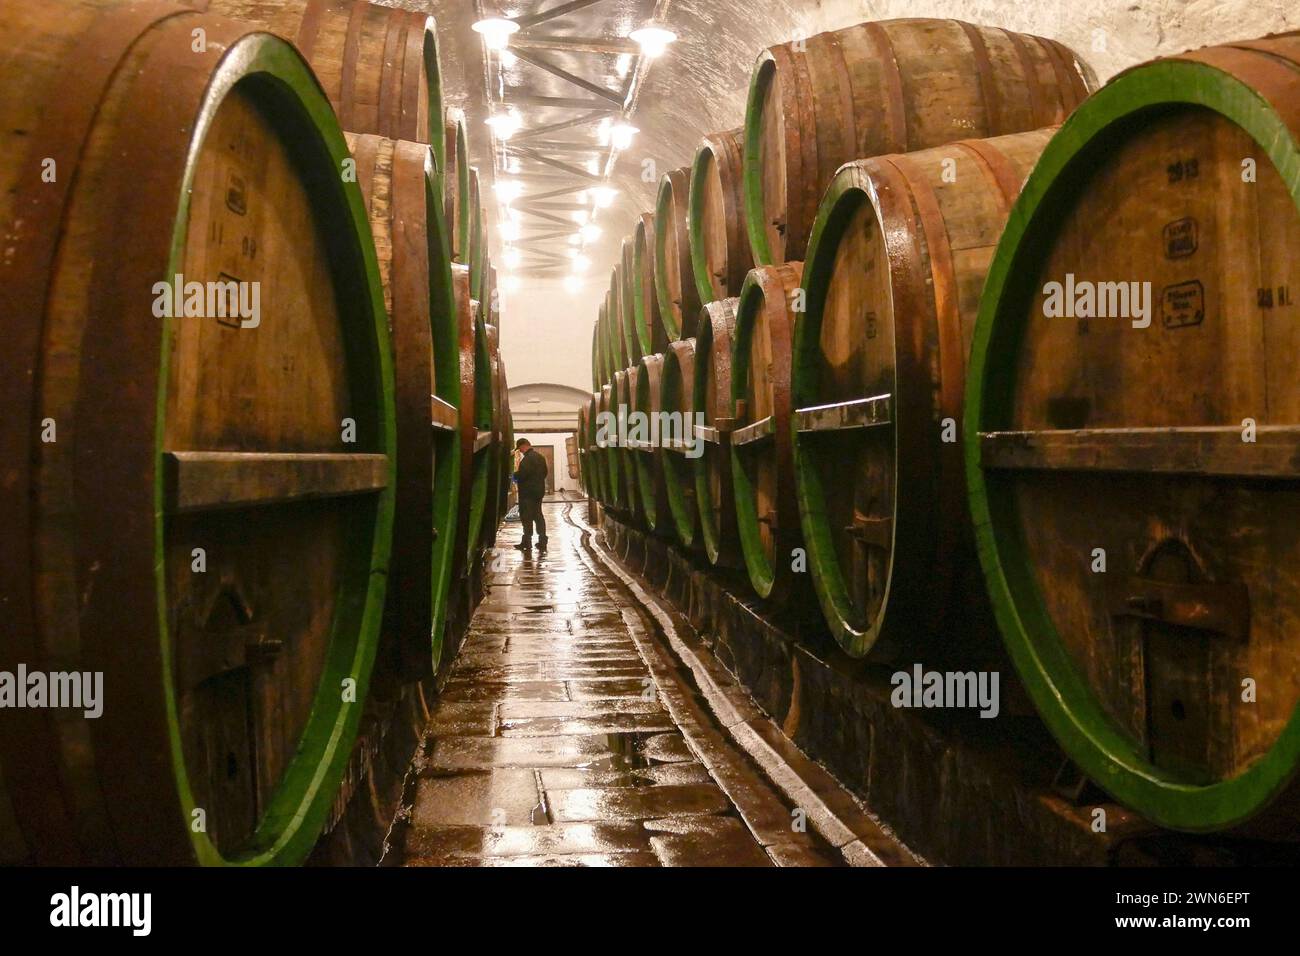 Pilsen, Tschechische Republik - 01. Juni 2017 - Alte Holzfässer im Keller der Pilsner Urquell Brauerei Stockfoto